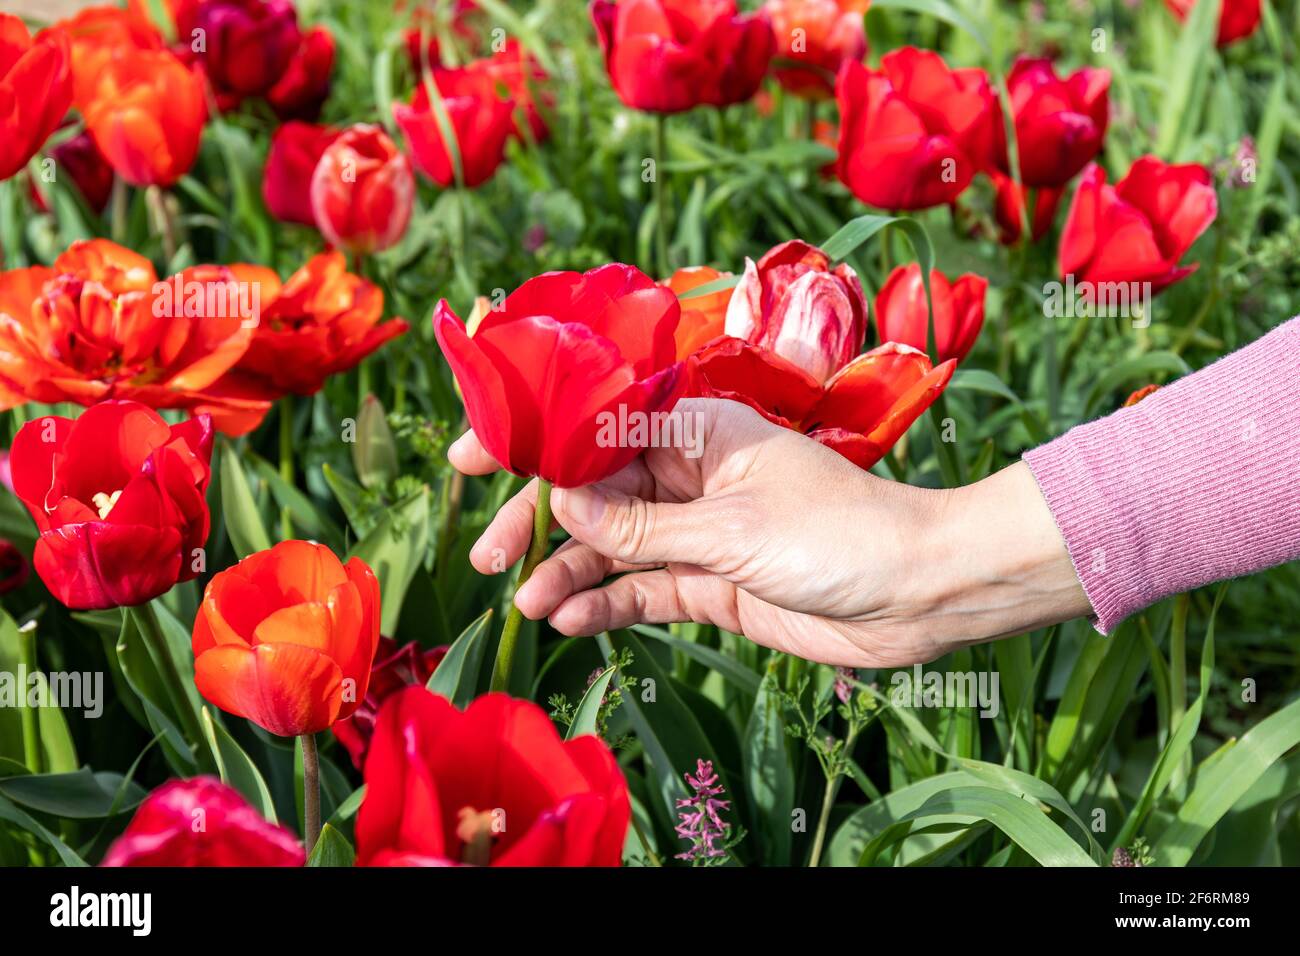 Weibliche Hand mit einem zartrosa Pullover, der eine rote Tulpe in einem Feld voller Tulpen aufgreift. Frühjahrskonzept. Stockfoto